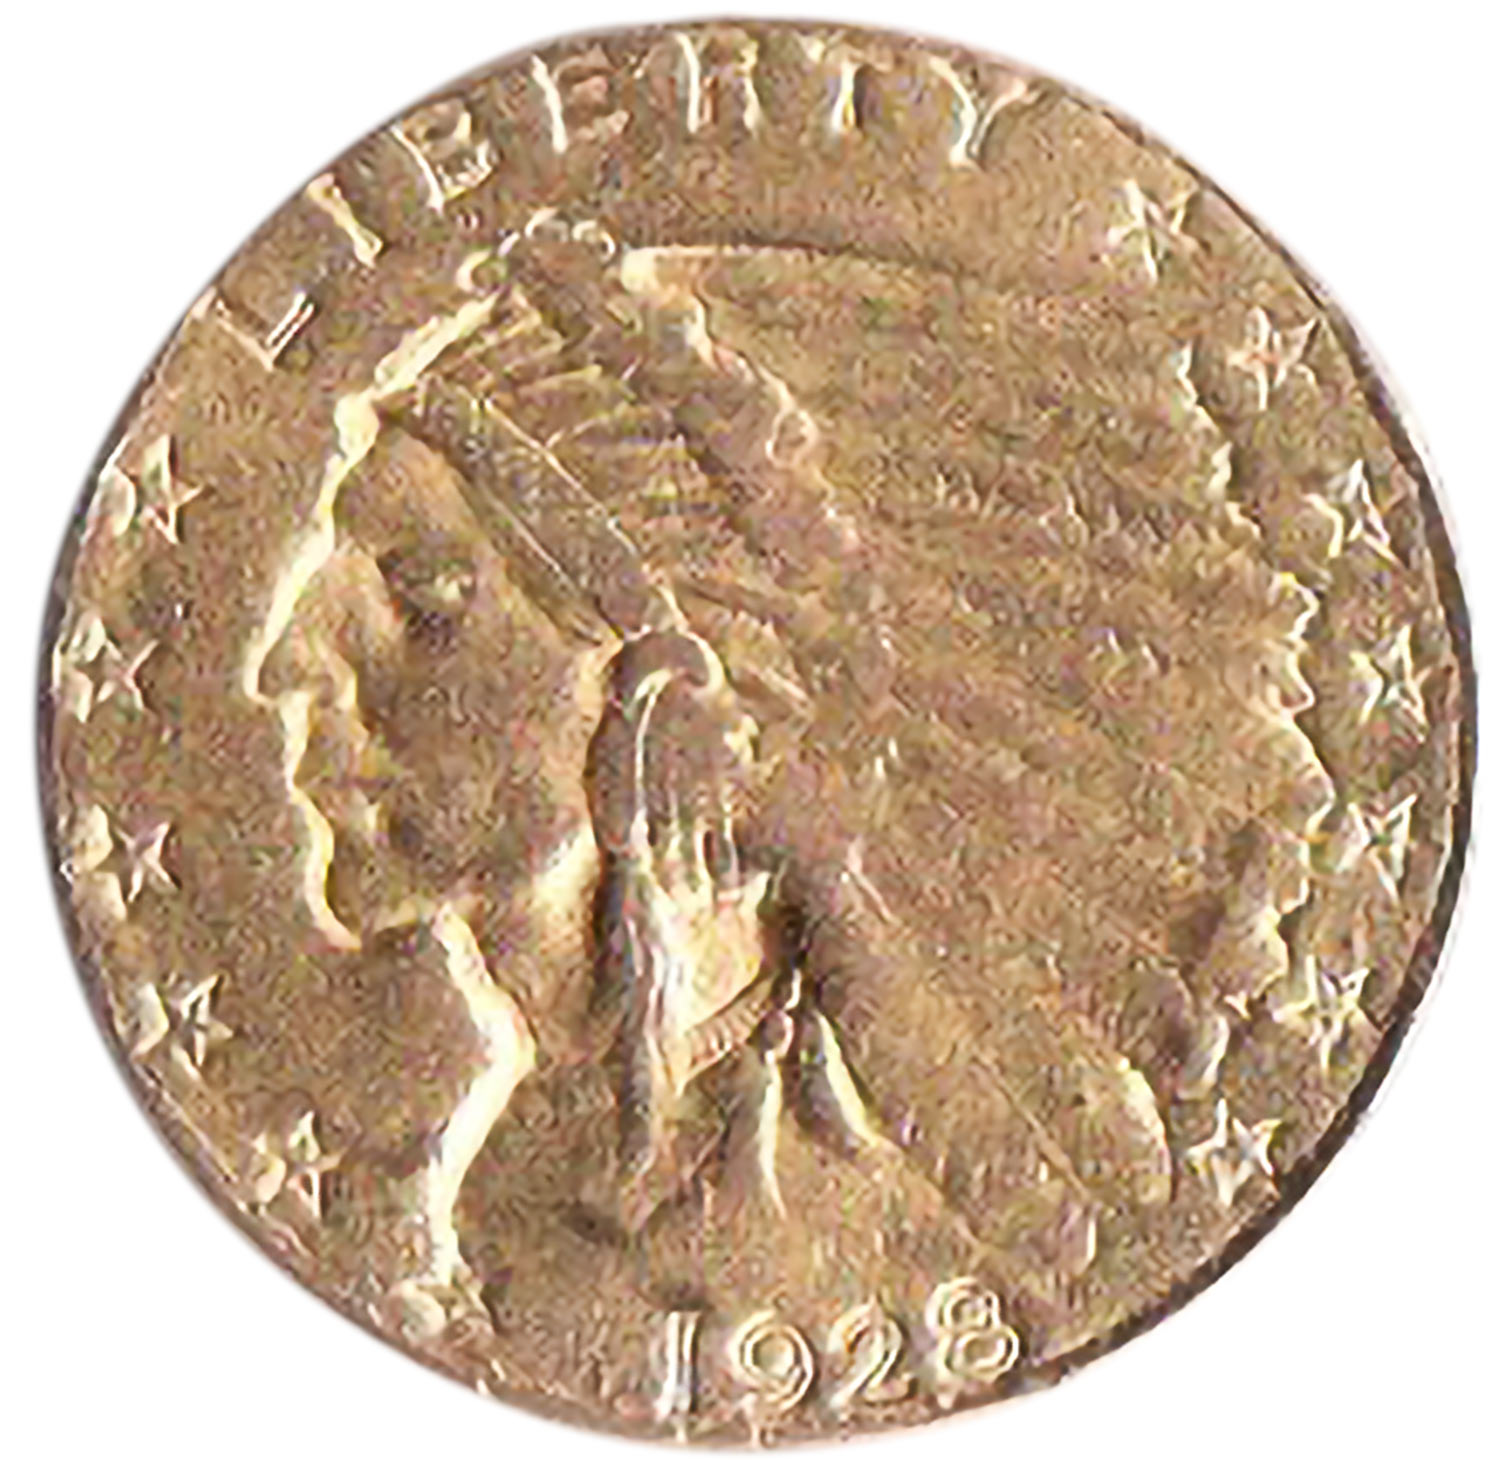 STATI UNITI 1928 - 2,5 Dollars Oro  Testa di Indiano Buona conservazione